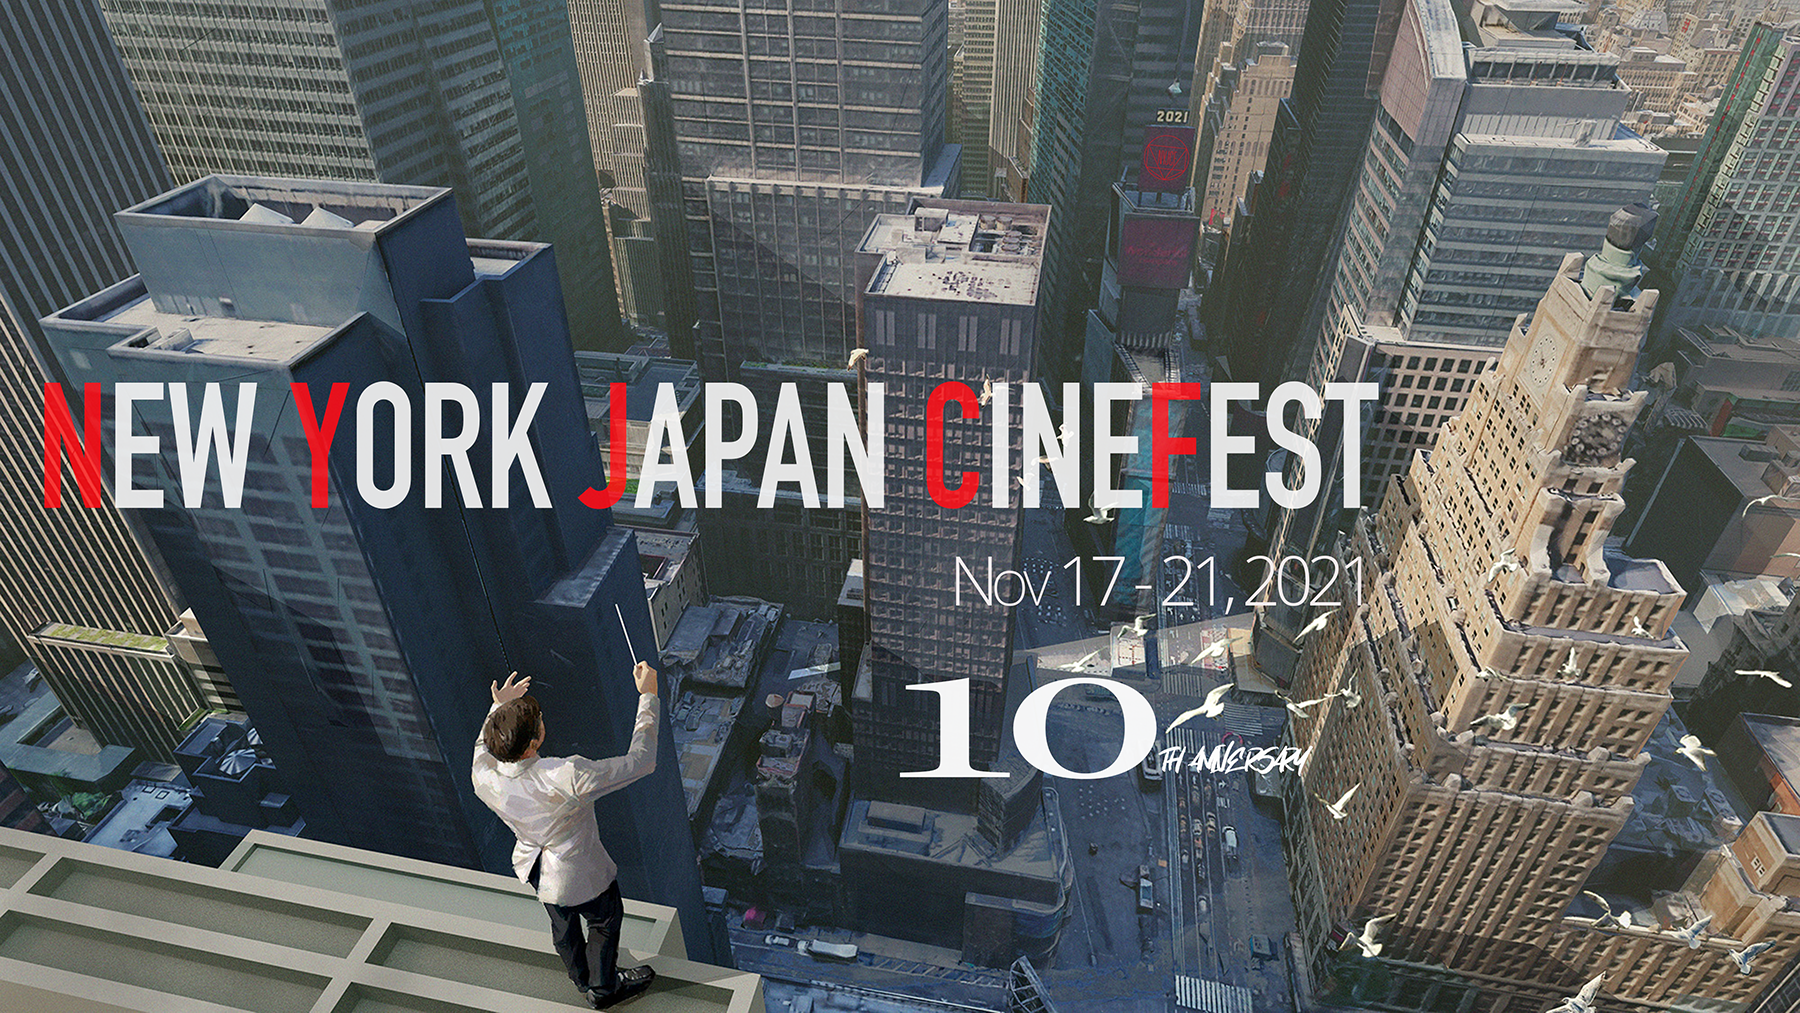 New York Japan Cinefest